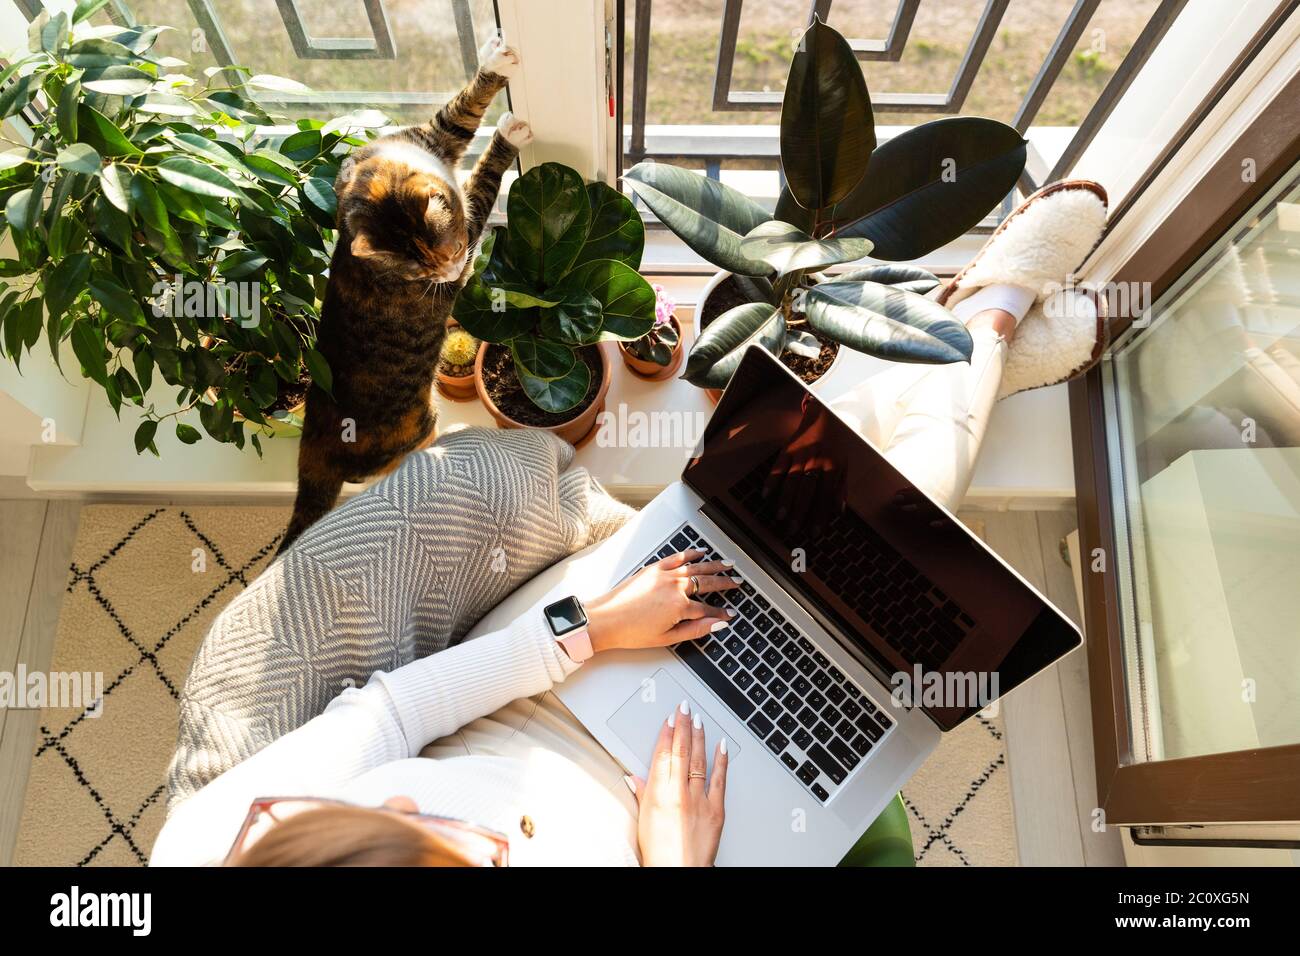 Donna seduta su poltrona e mettendo i piedi sul davanzale, lavora su computer portatile a casa durante l'auto-isolamento, gatto vicino vuole attenzione e di essere Foto Stock